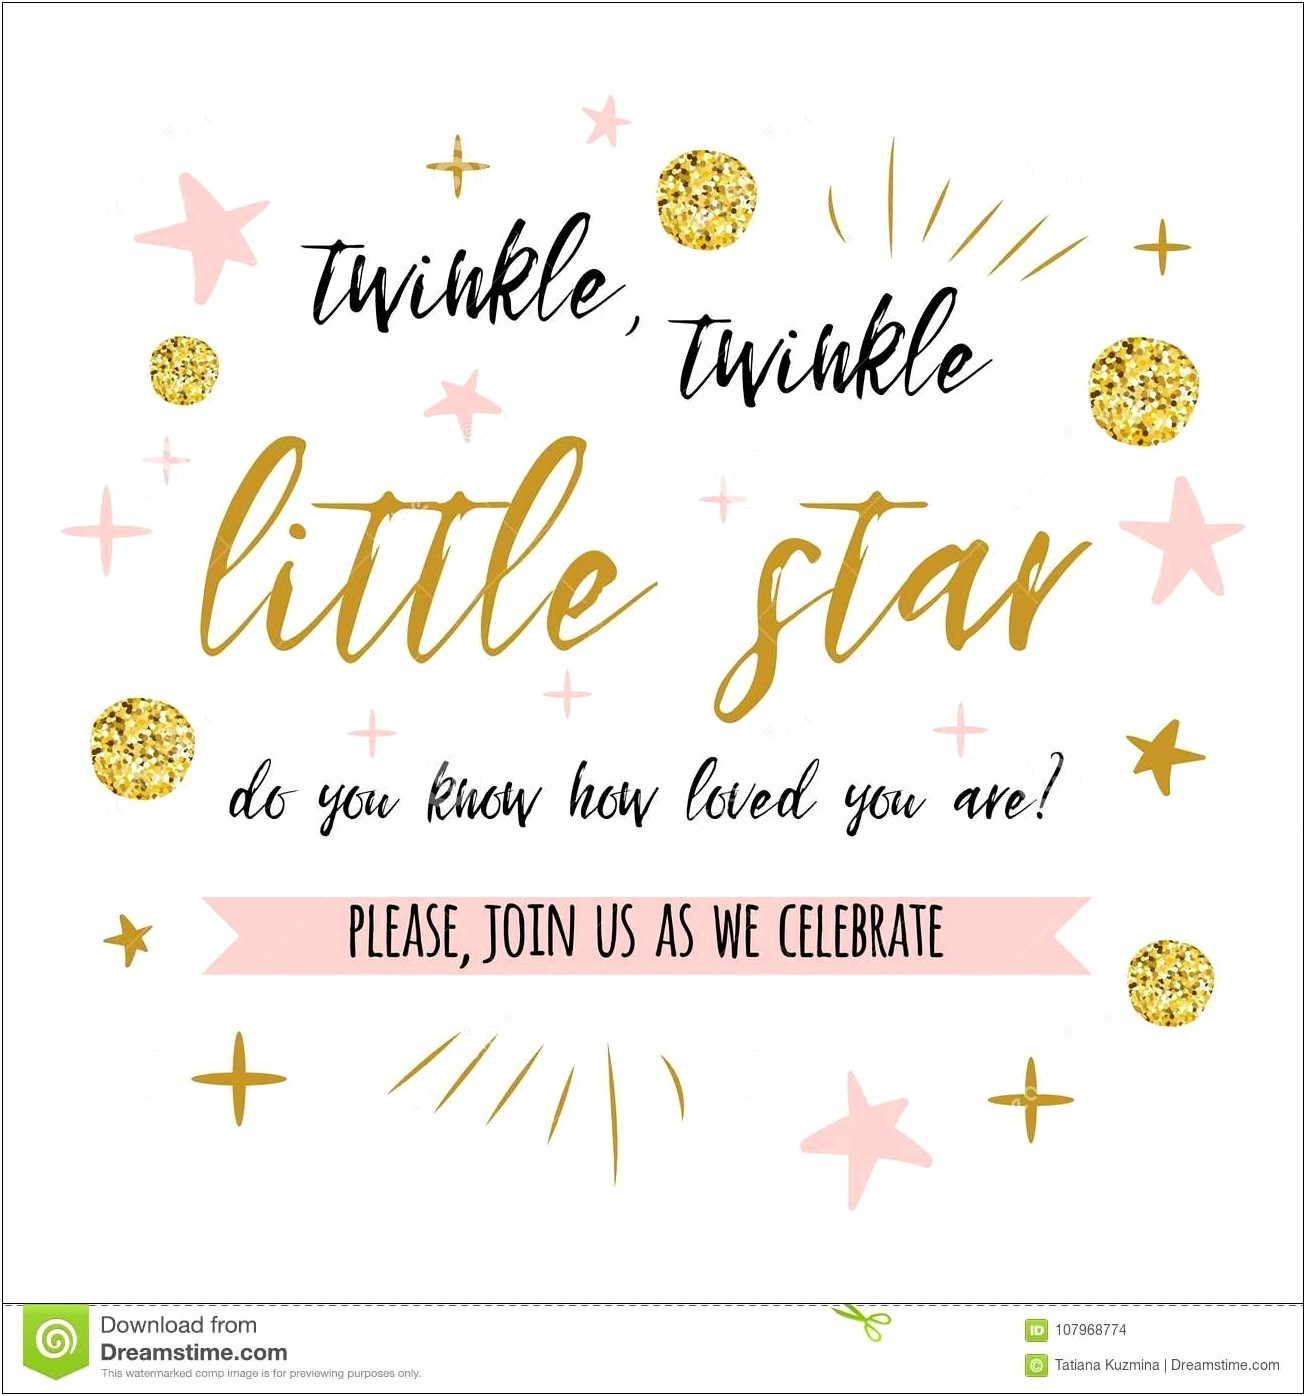 Twinkle Twinkle Little Star Invitations Free Template